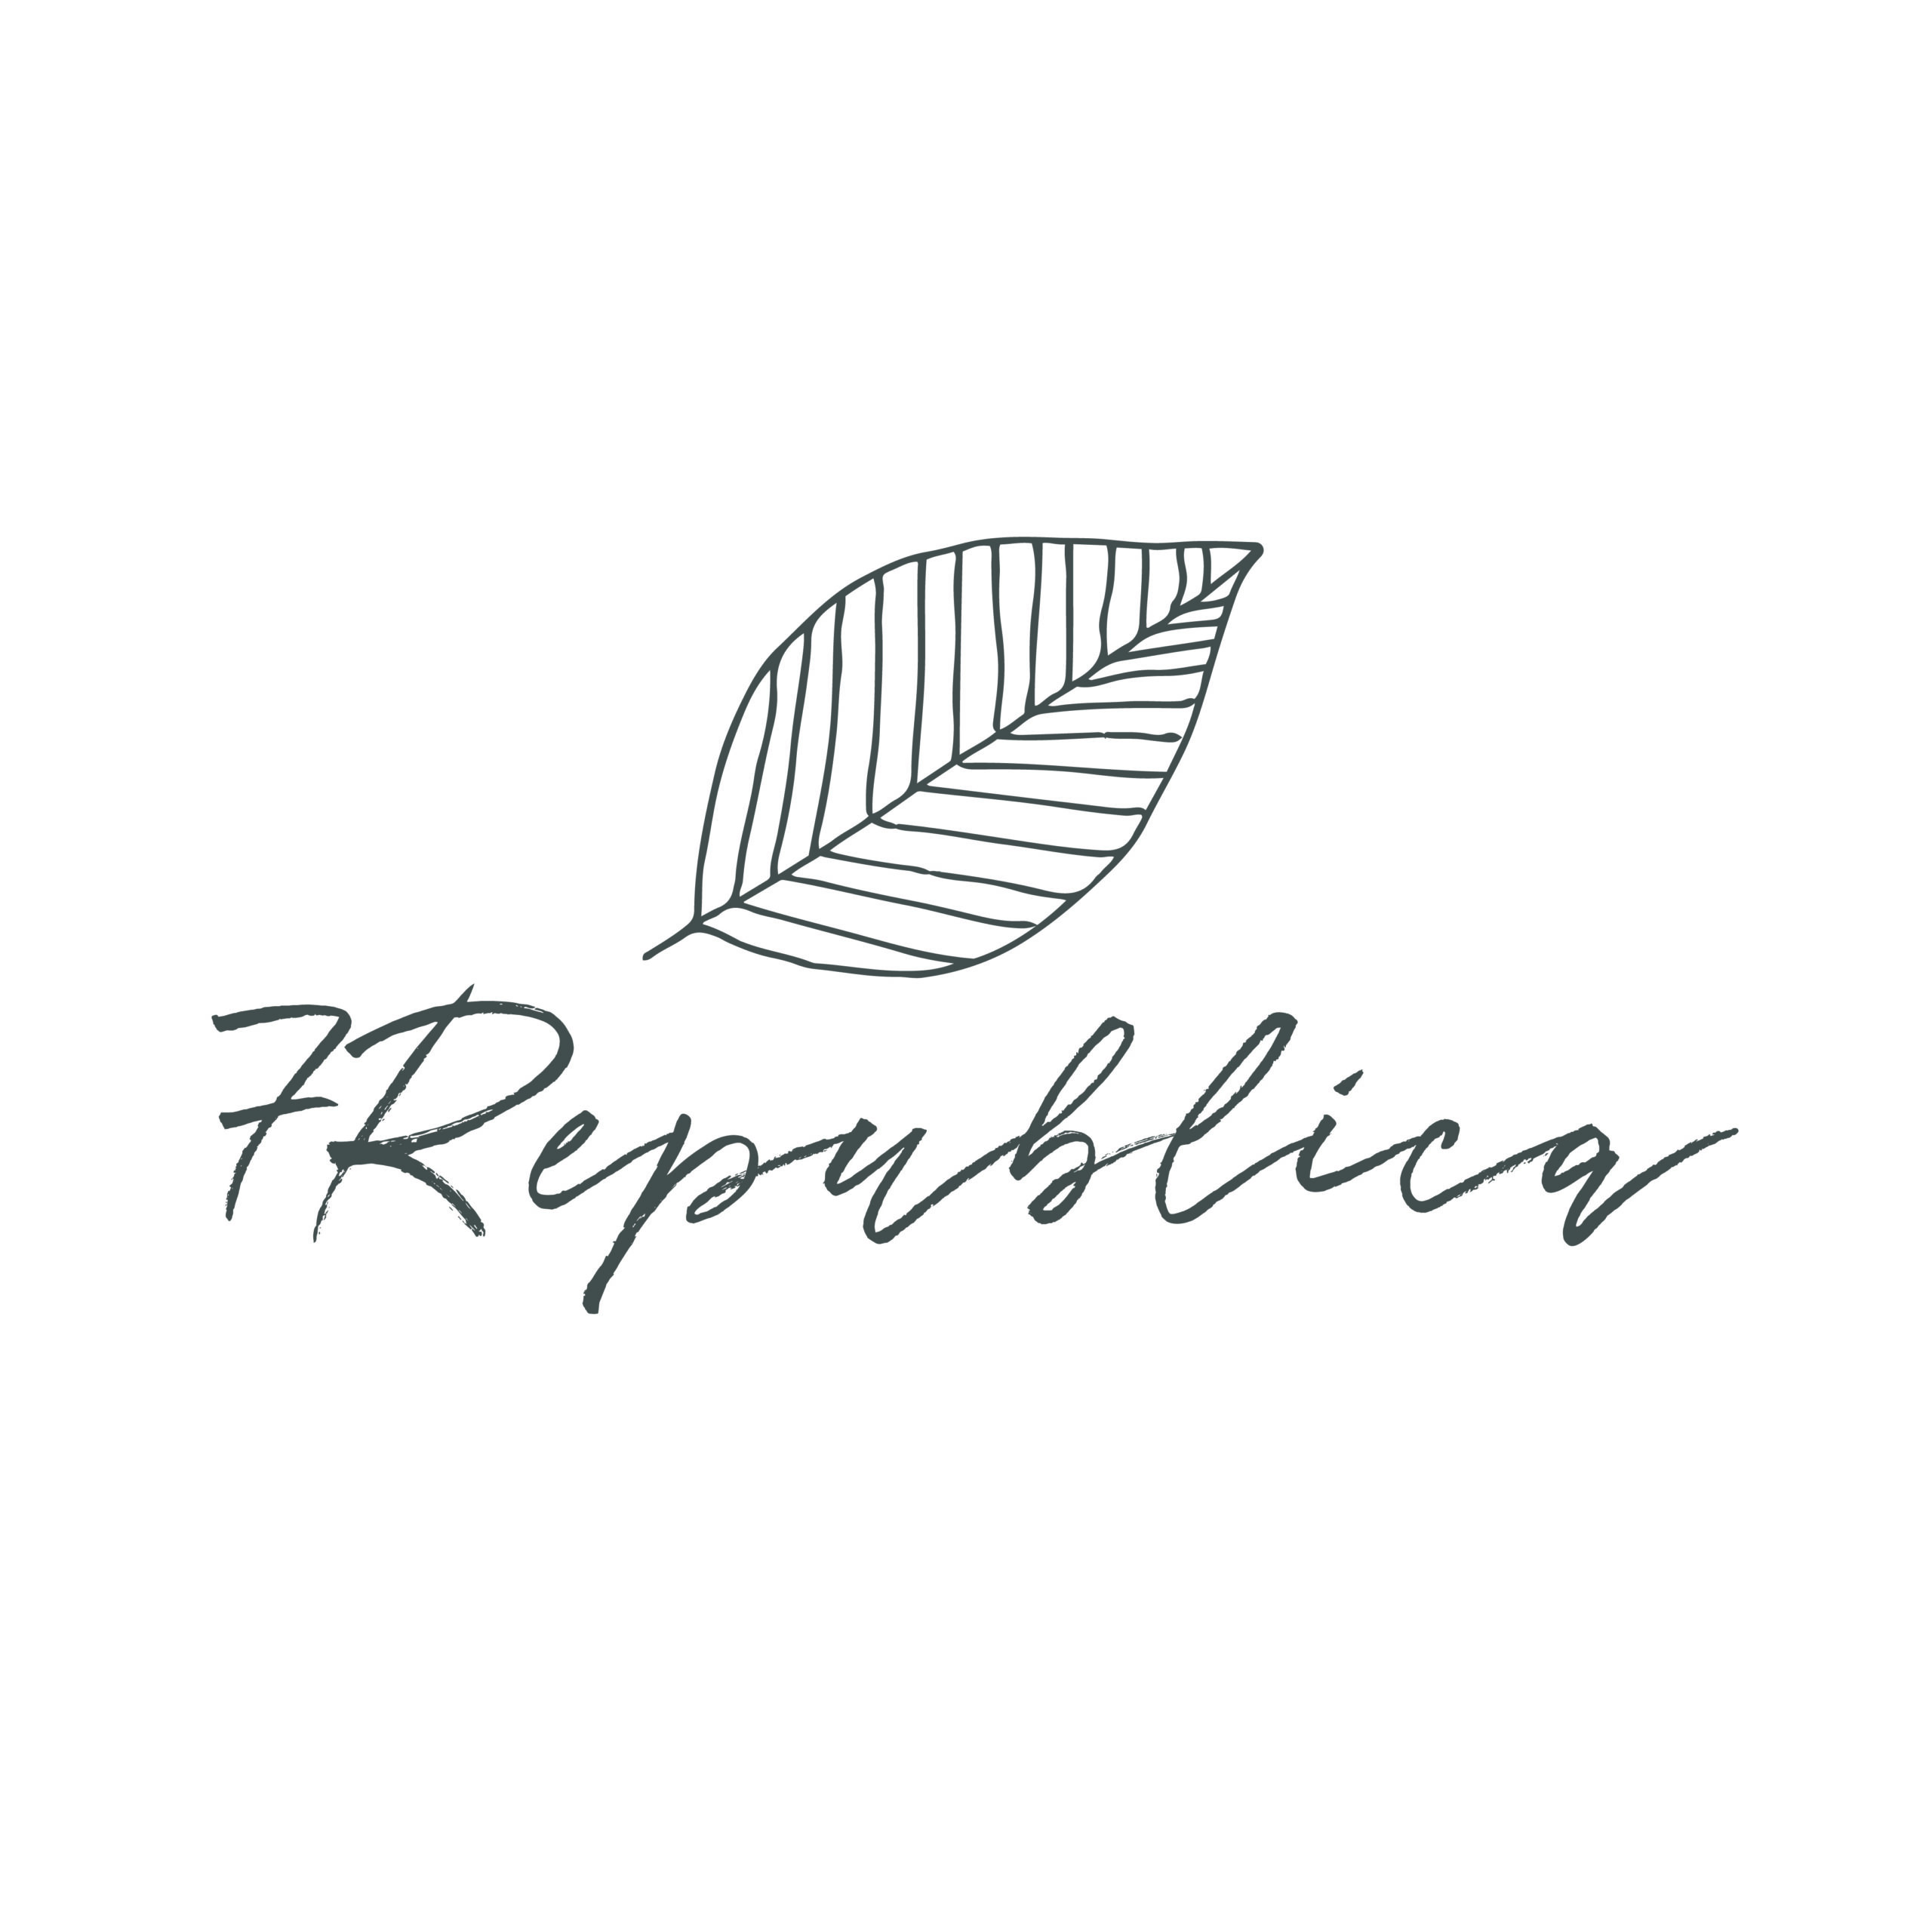 7republica-logos_final-02